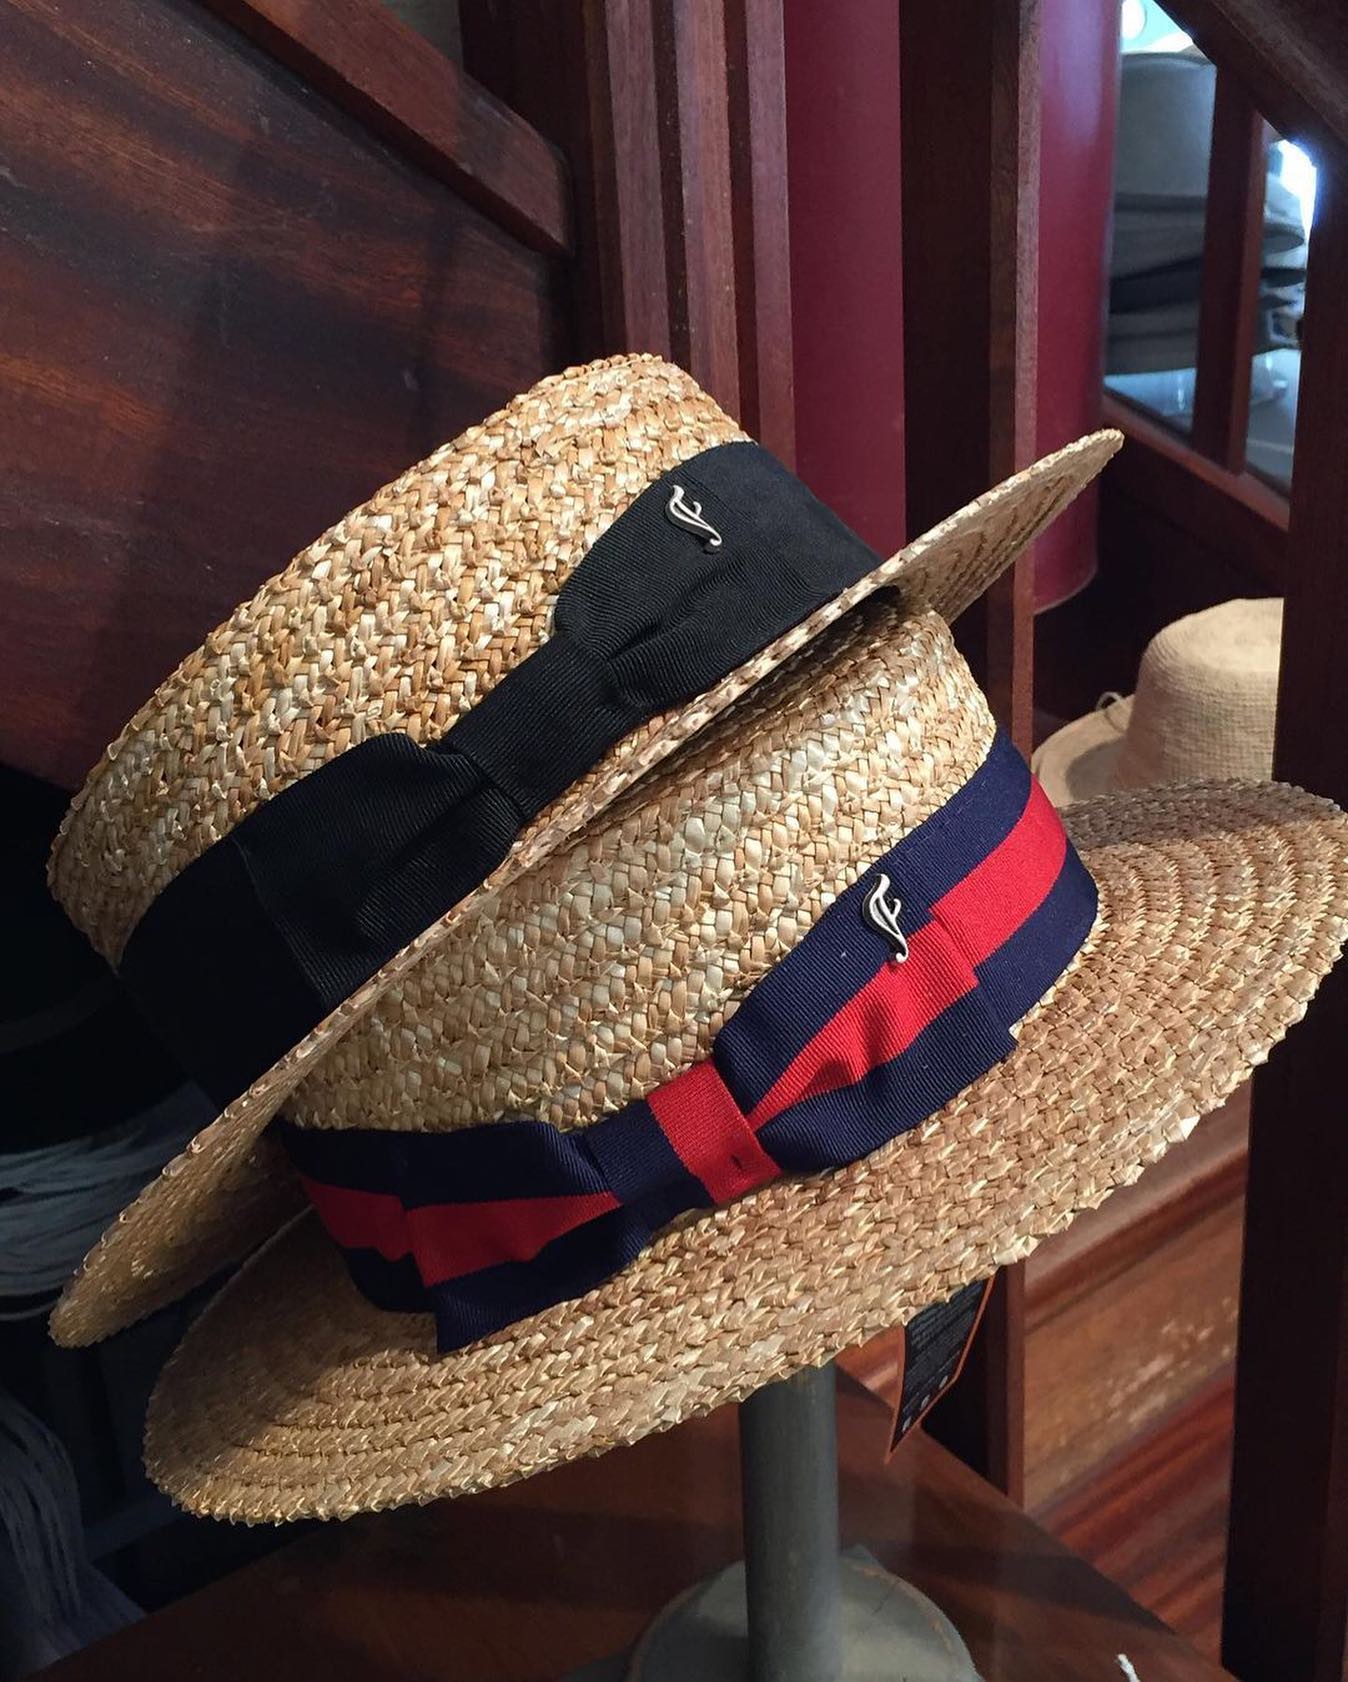 Découvrez tous nos modèles de chapeaux disponibles dans nos boutiques sur notre catalogue directement téléchargeable sur www.flechet.eu
.
Photo @la_parisienne_chapellerie